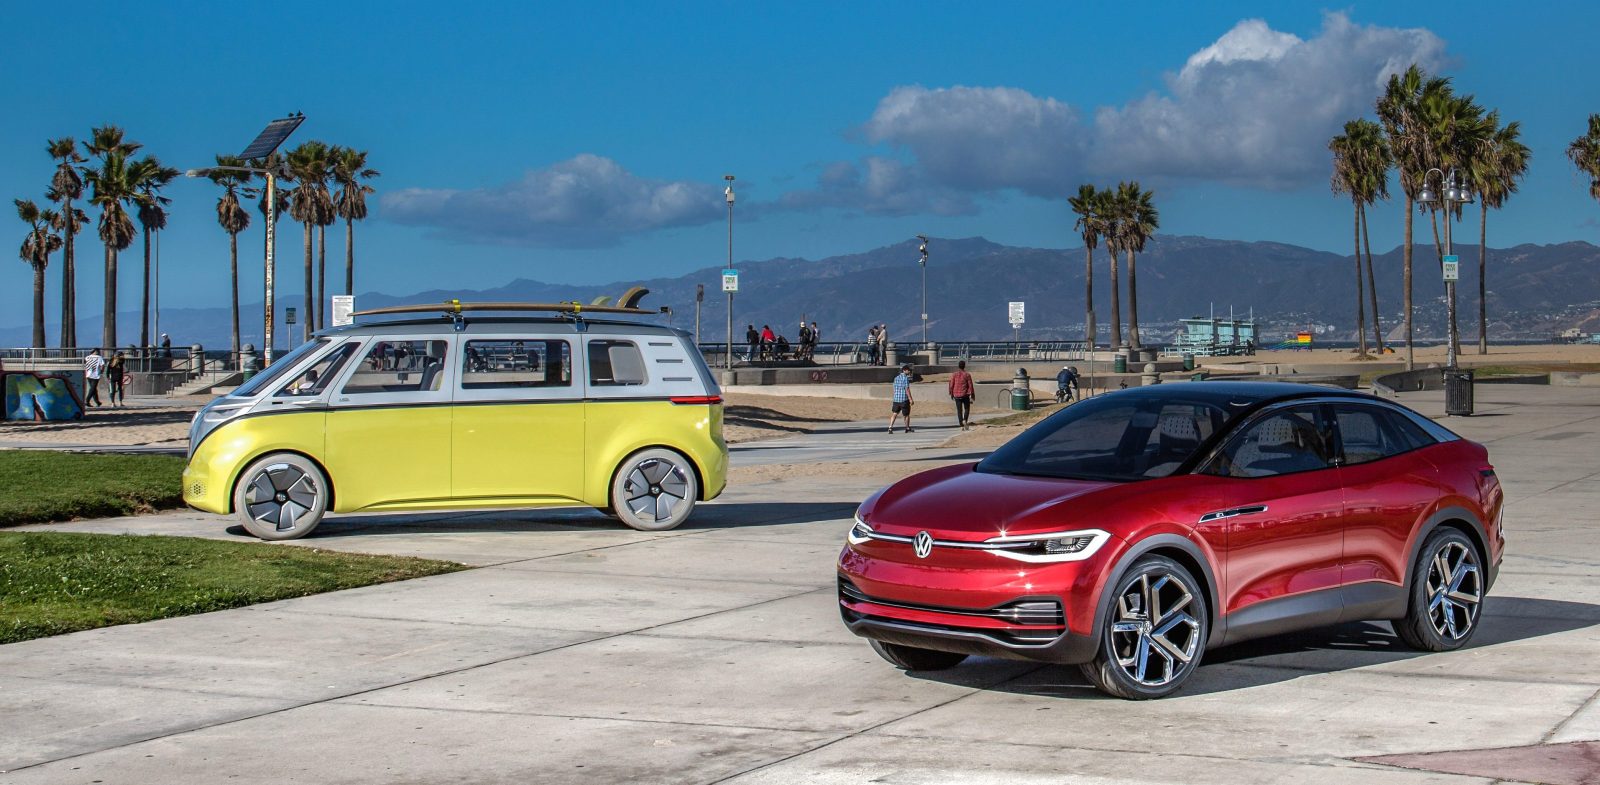 Volkswagen I.D. electric vehicles